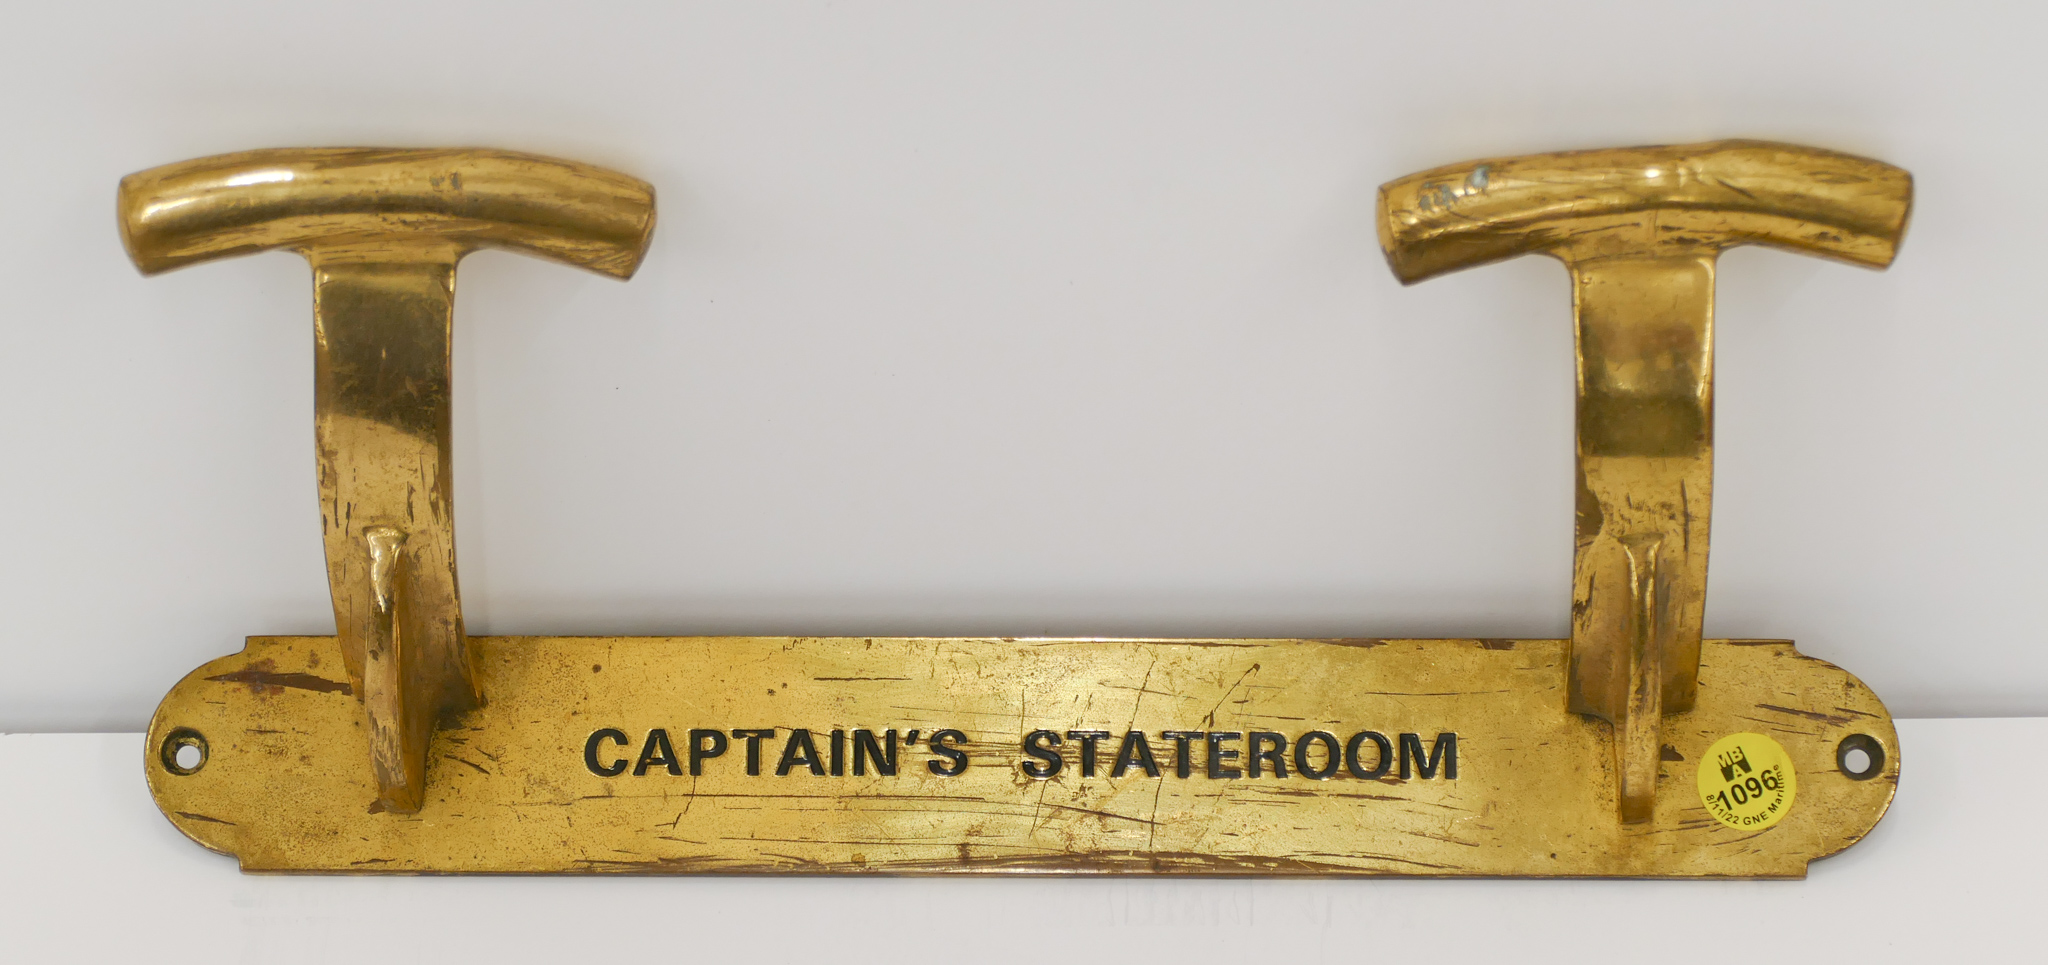 Captains Quarters Brass Coat Hanger 2b09d3